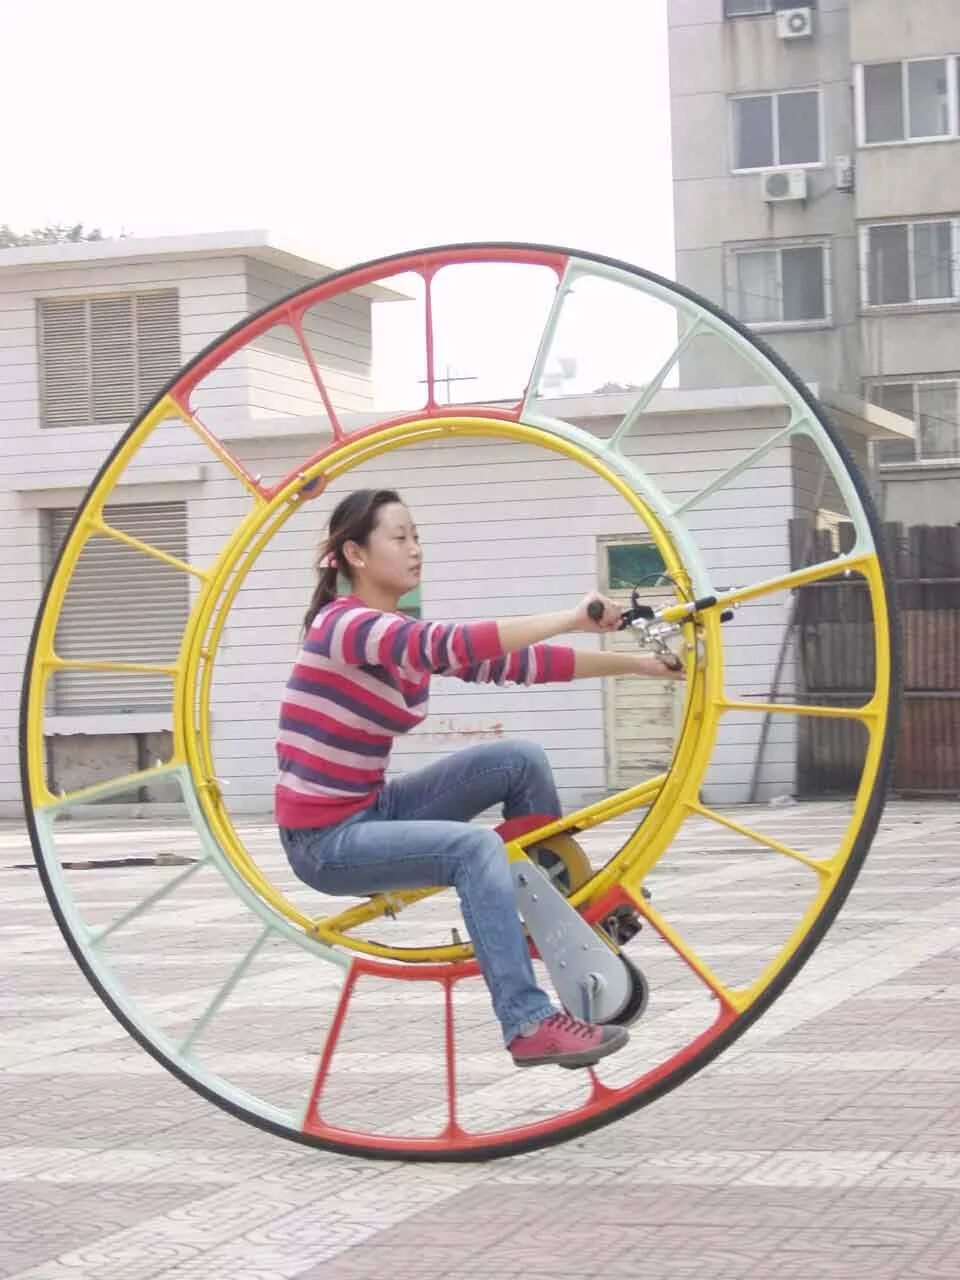 Что можно придумать новое. Одноколесный велосипед. Большое колесо с педалями. Необычные велосипеды. Гигантское колесо с педалями.